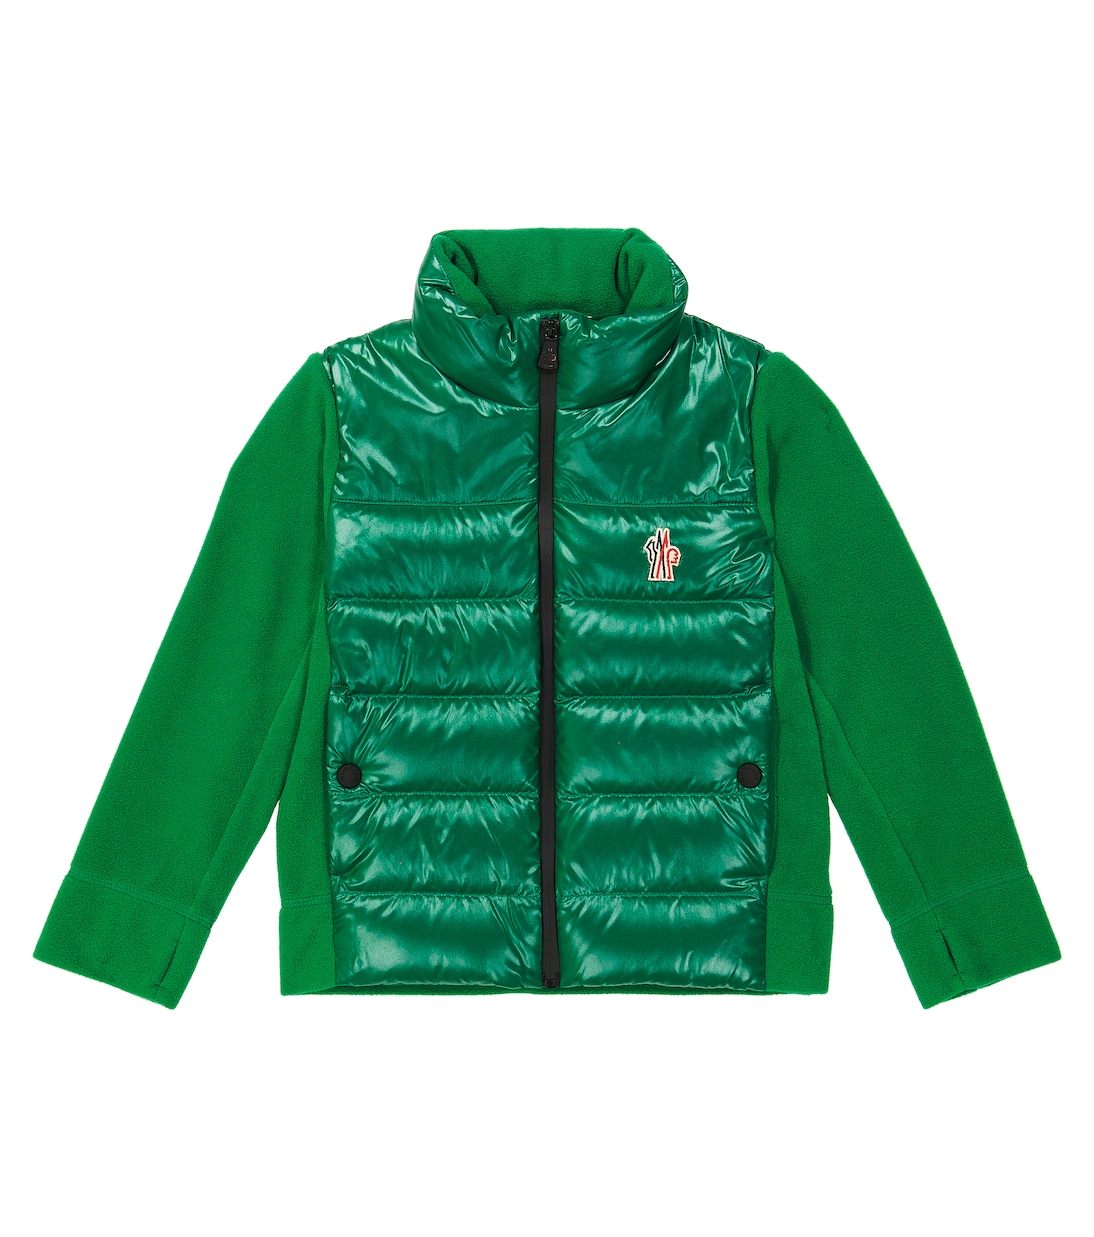 Пуховая куртка Moncler Grenoble Enfant, зеленый короткий пуховик цвета хаки raron moncler grenoble